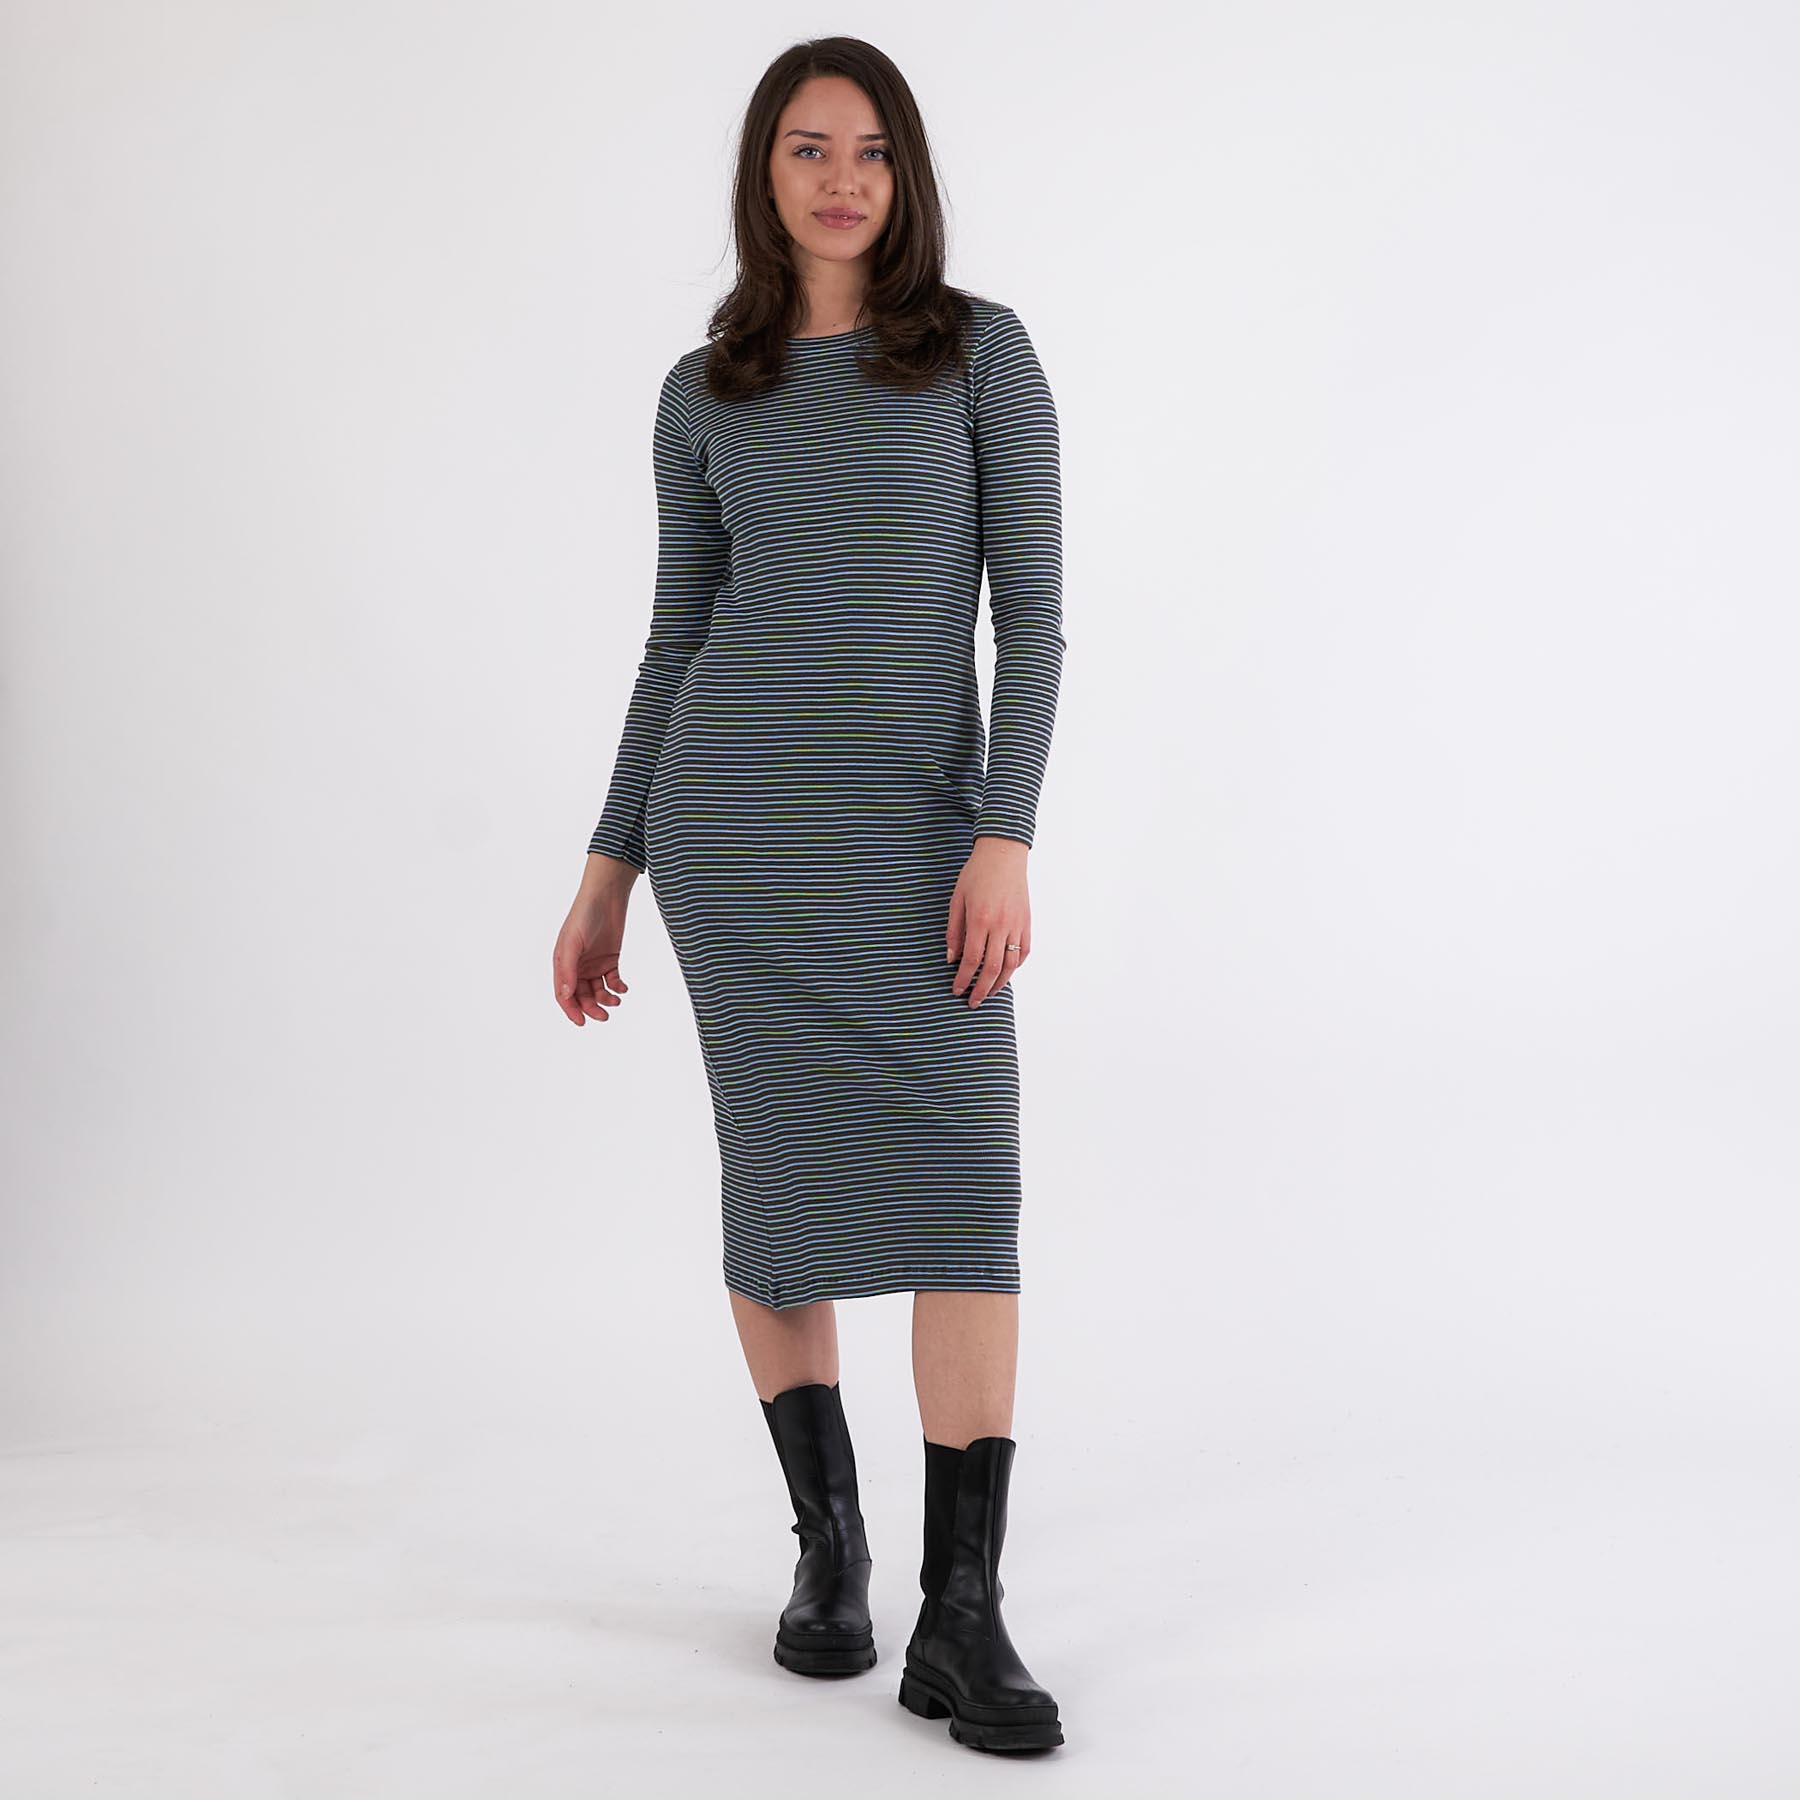 Nørgaard - 2x2 cotton stripe duba dress - Kjoler til hende - FOREST NIGHT/DELLA R - XS